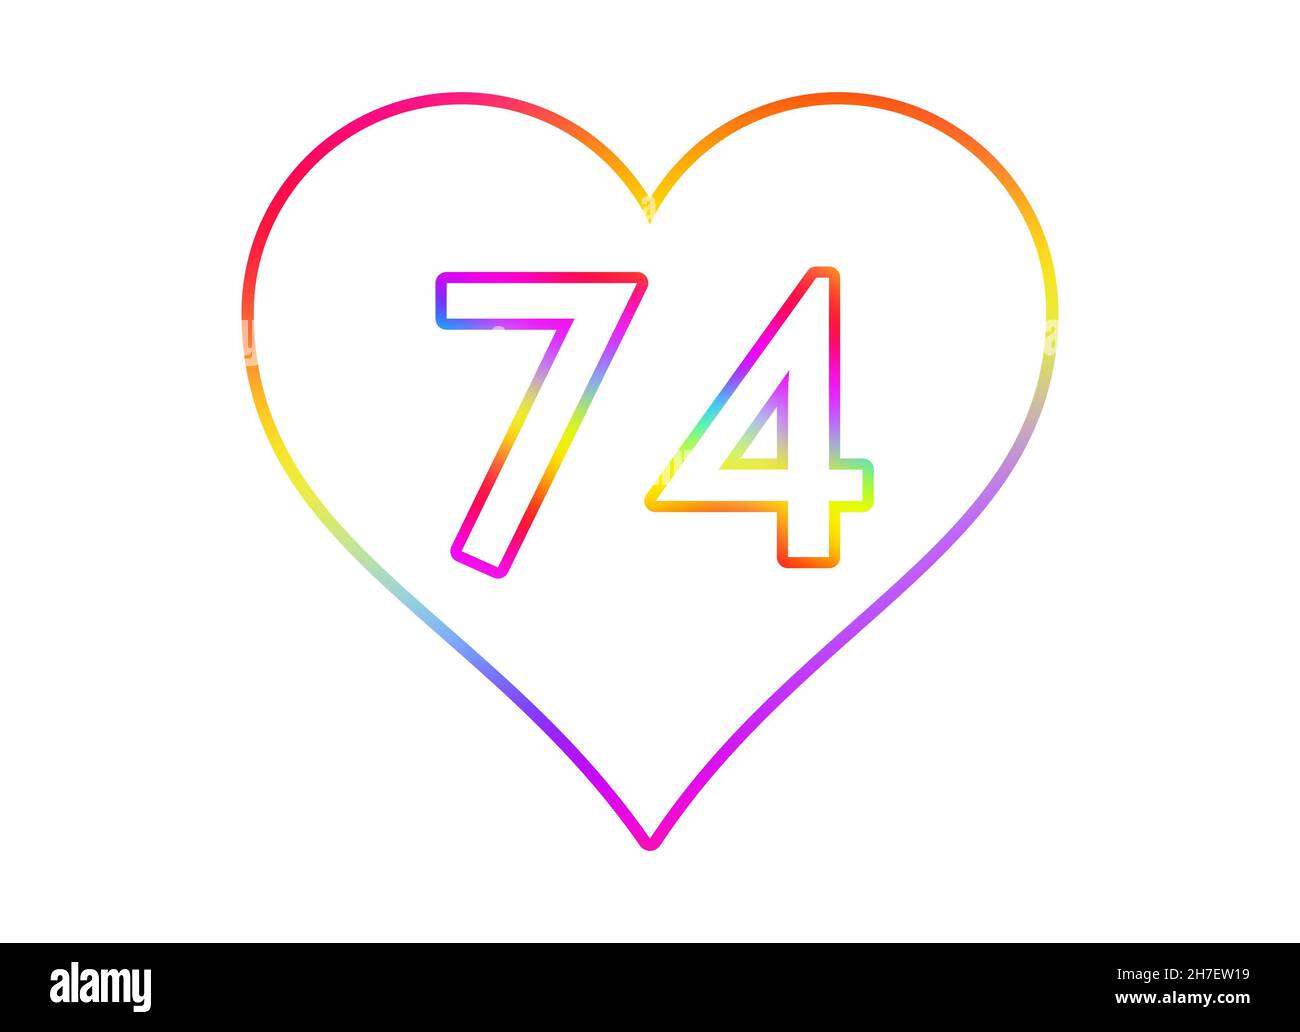 numero-74-dans-un-coeur-blanc-avec-un-contour-de-couleur-arc-en-ciel-2h7ew19.jpg